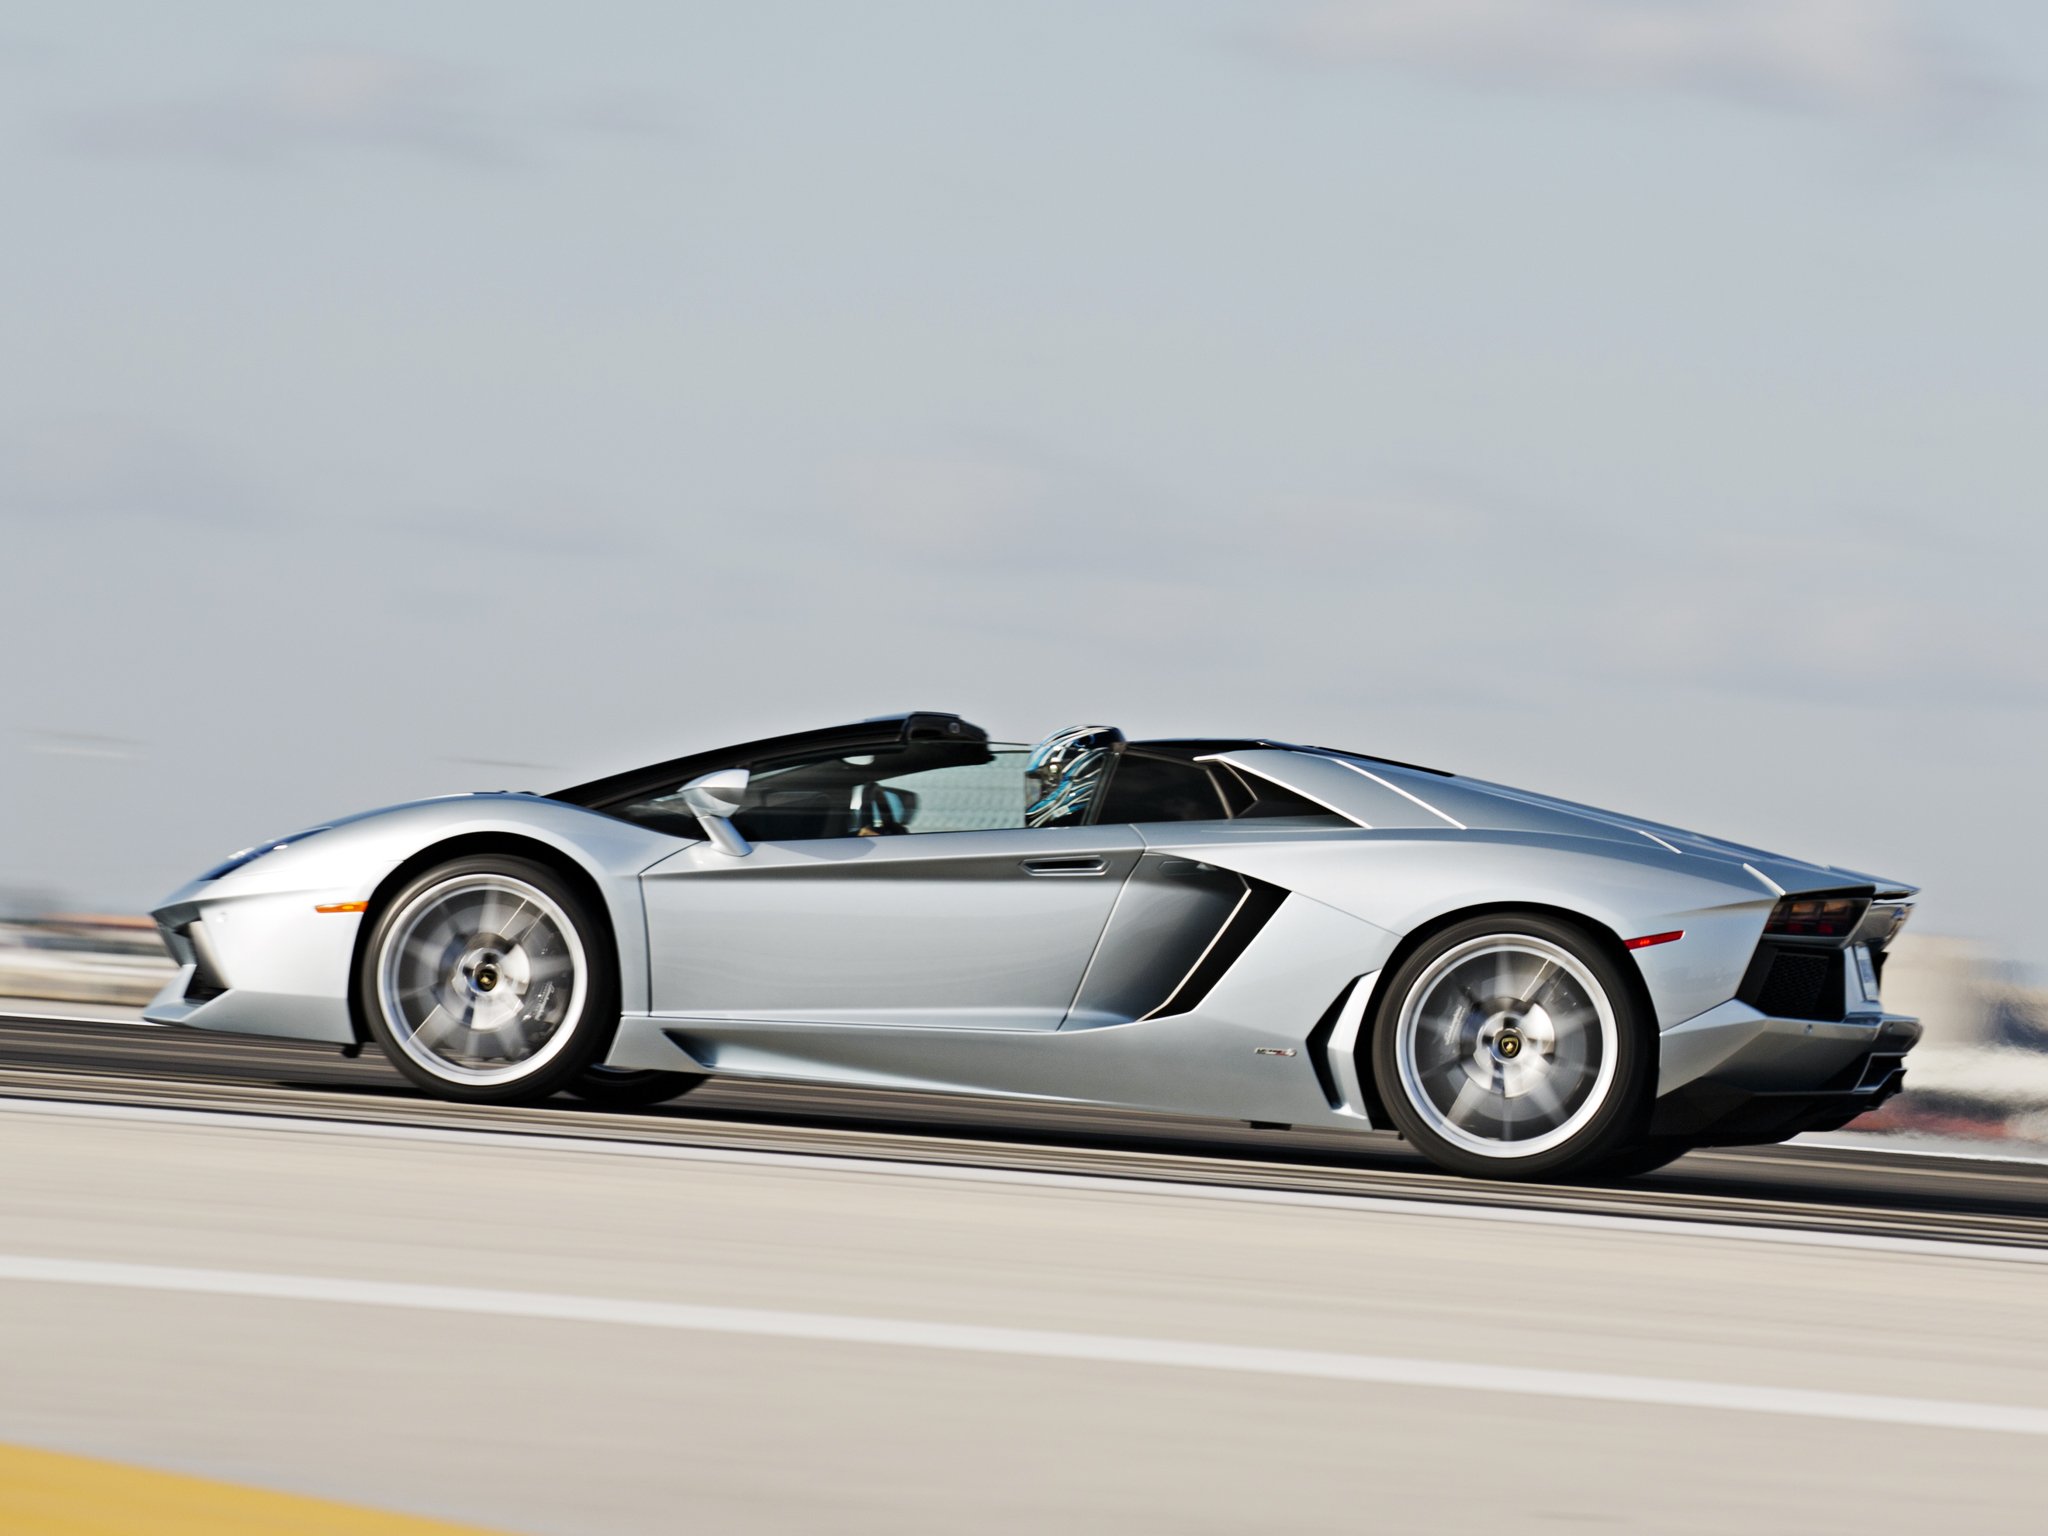 2014, Lamborghini, Aventador, Lp700 4, Roadster, Us spec,  lb834 , Supercar Wallpaper